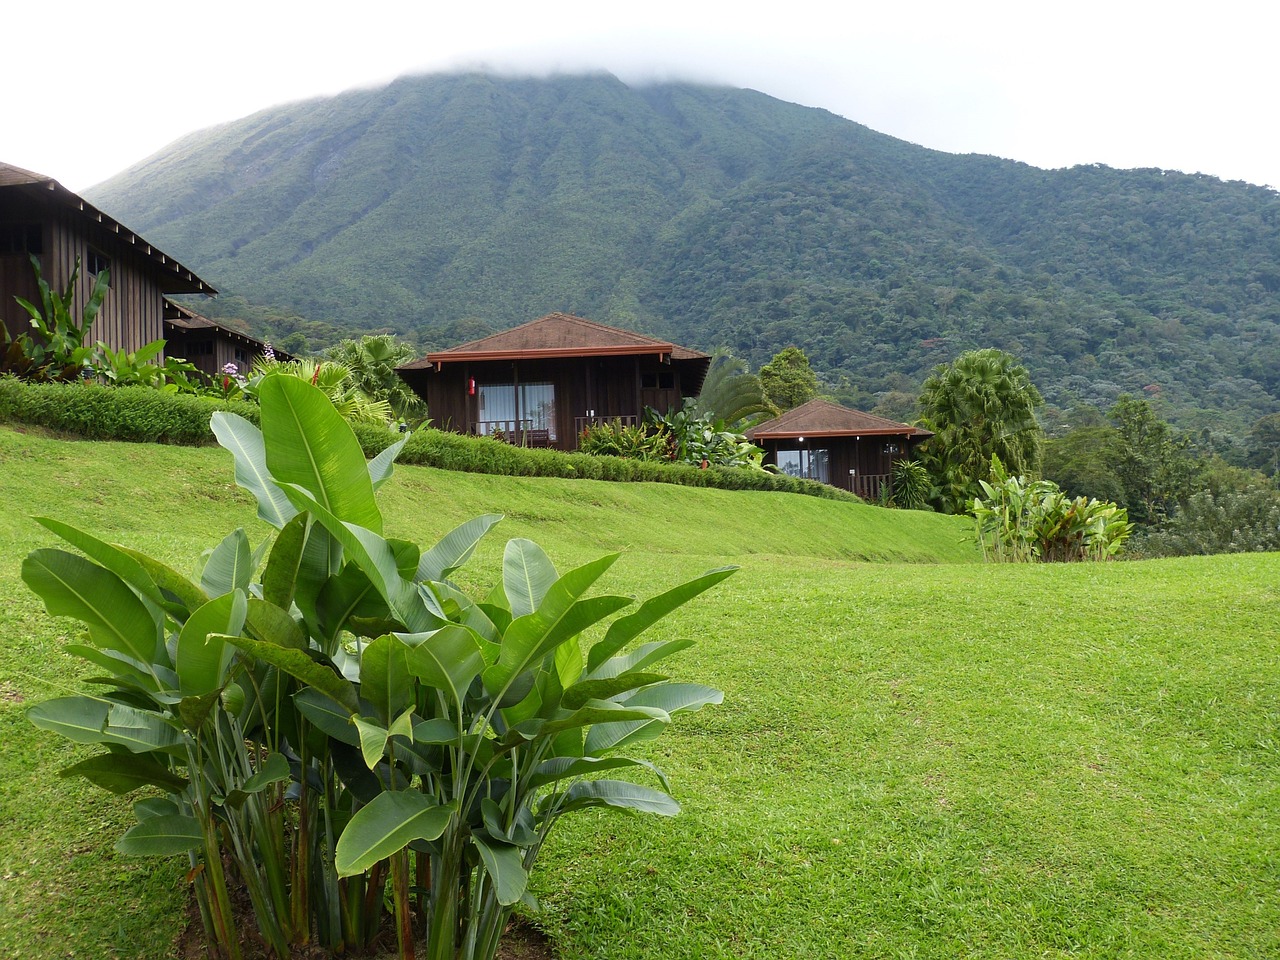 Localização: Costa Rica